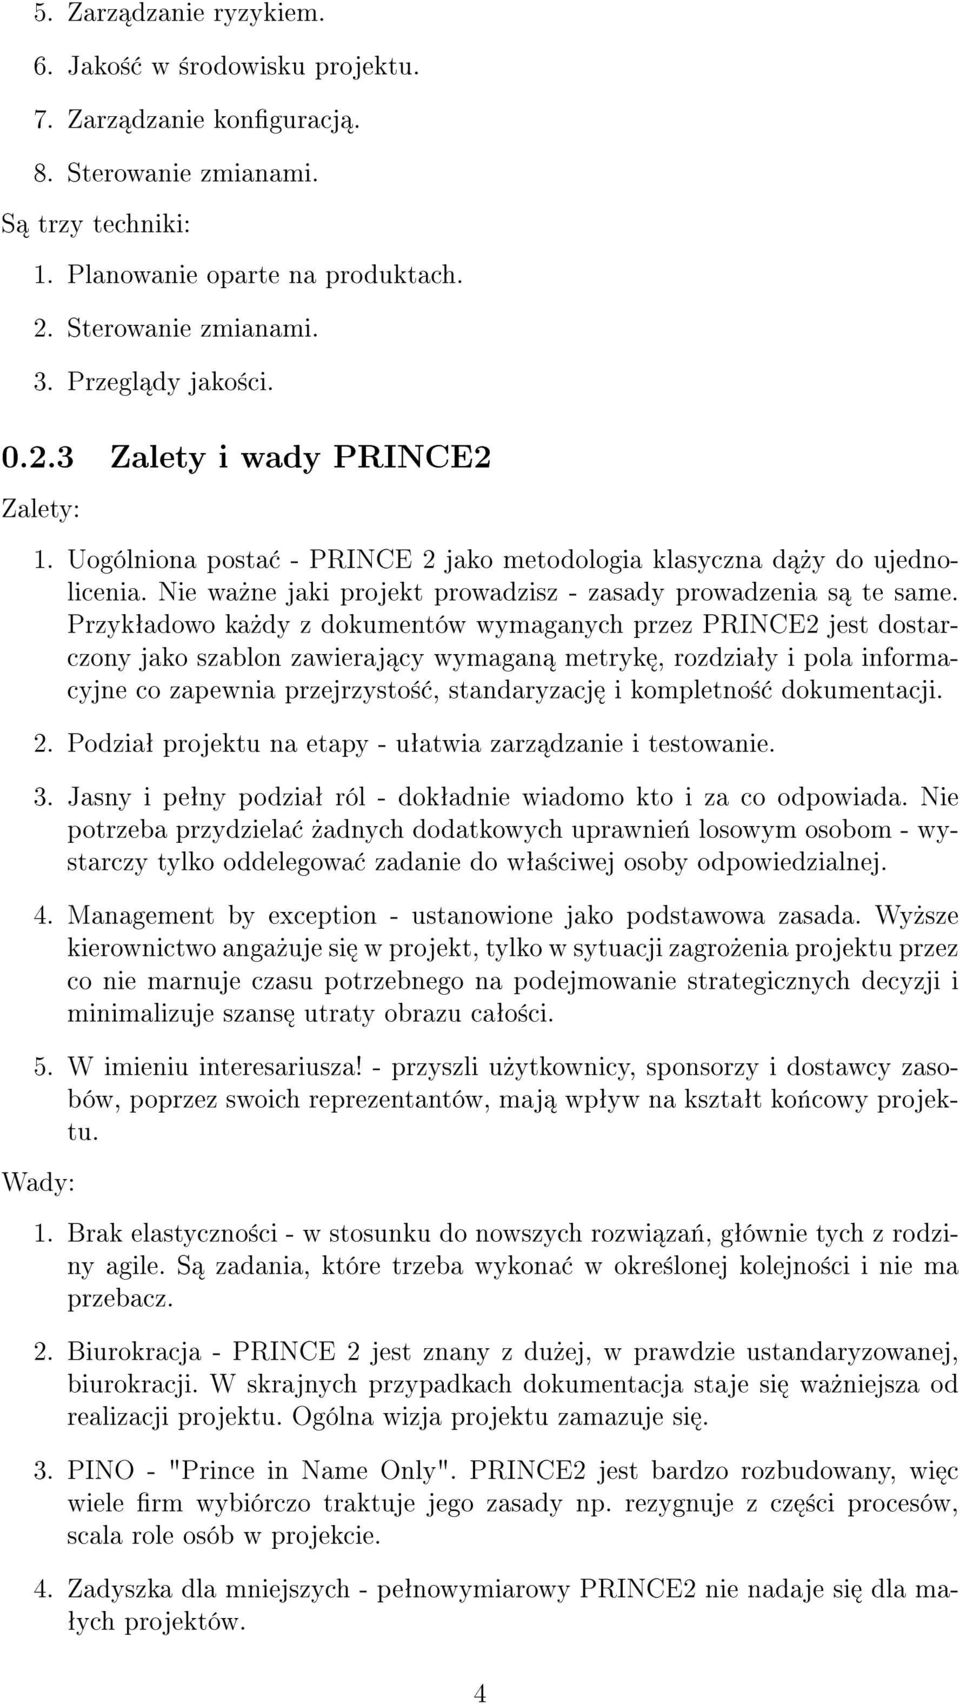 Przykªadowo ka»dy z dokumentów wymaganych przez PRINCE2 jest dostarczony jako szablon zawieraj cy wymagan metryk, rozdziaªy i pola informacyjne co zapewnia przejrzysto±, standaryzacj i kompletno±